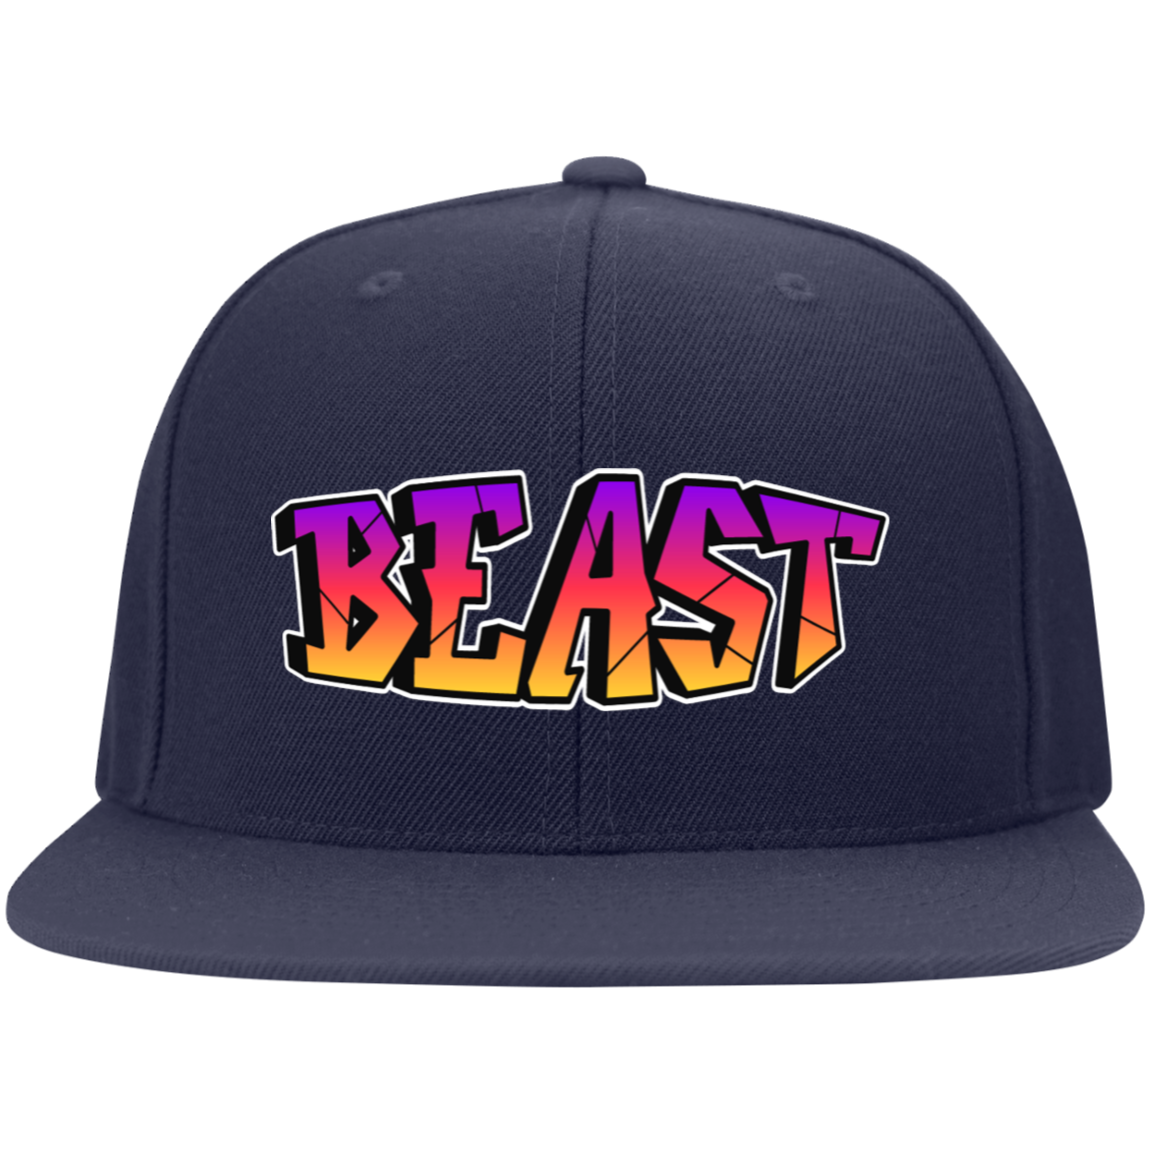 Beast Embroidered Flat Bill Twill Flexfit Cap